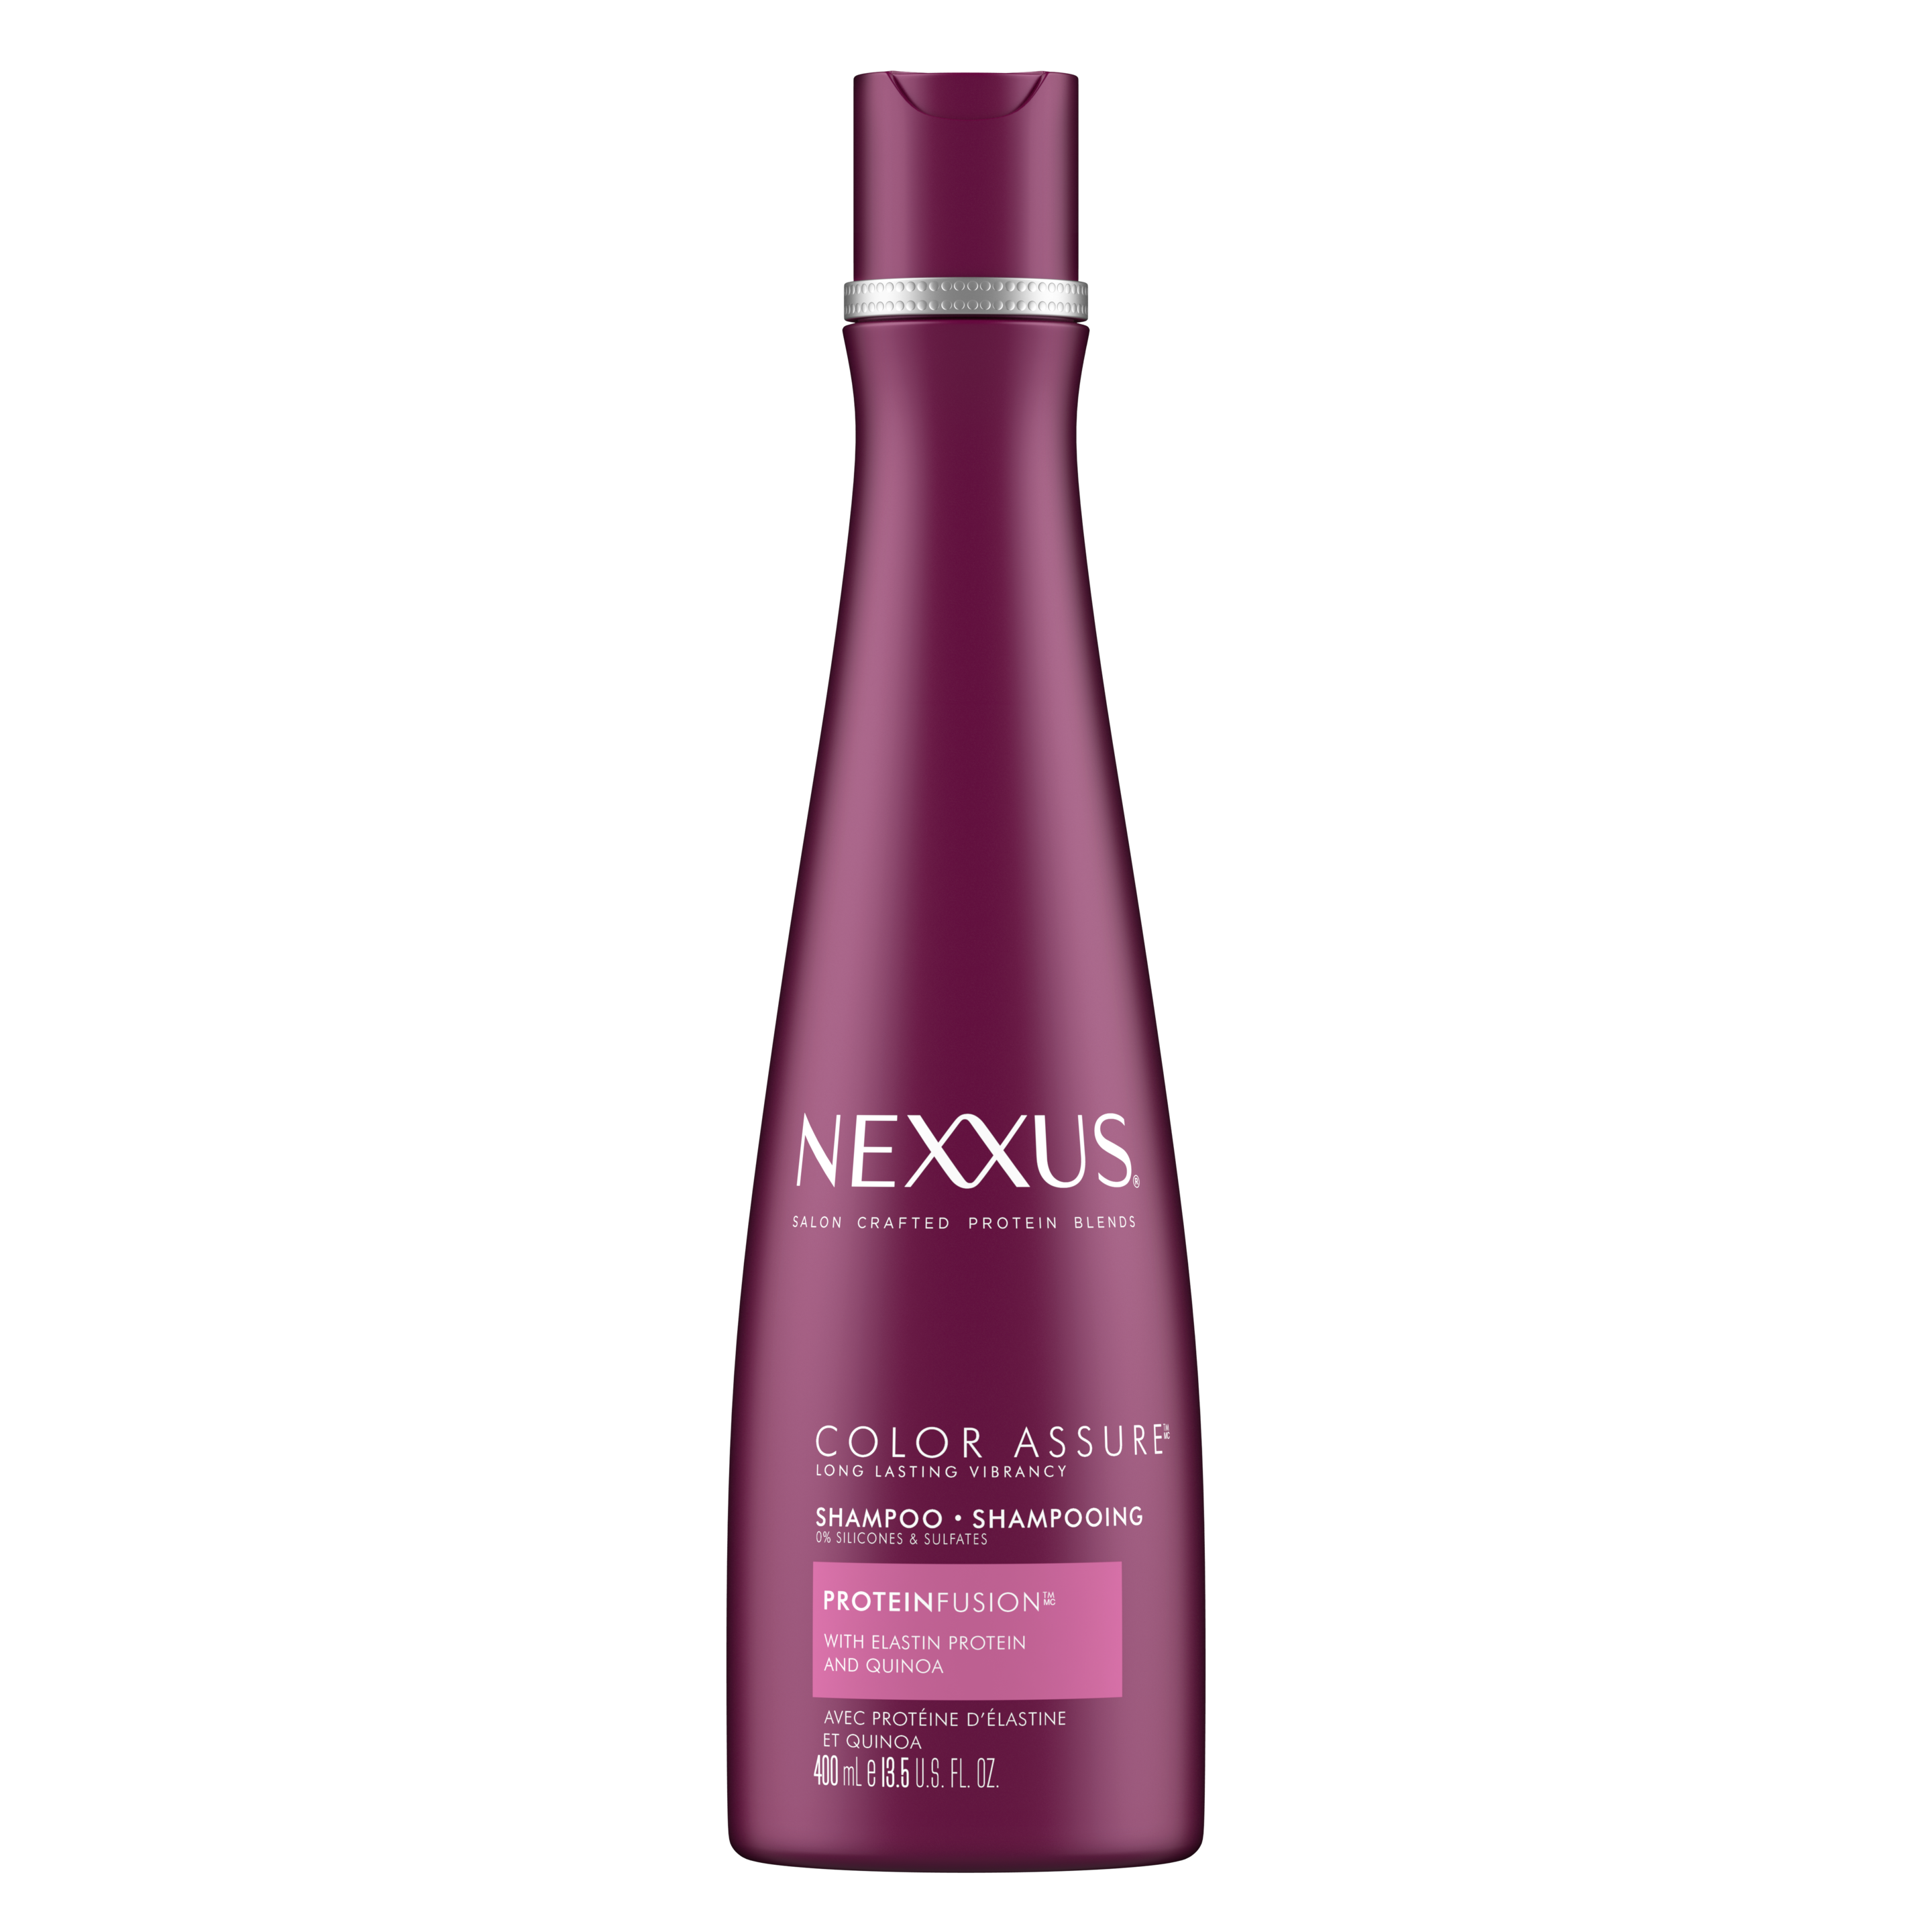 Face de l'emballage du shampoing color assure pour cheveux colorés de Nexxus 400 ml